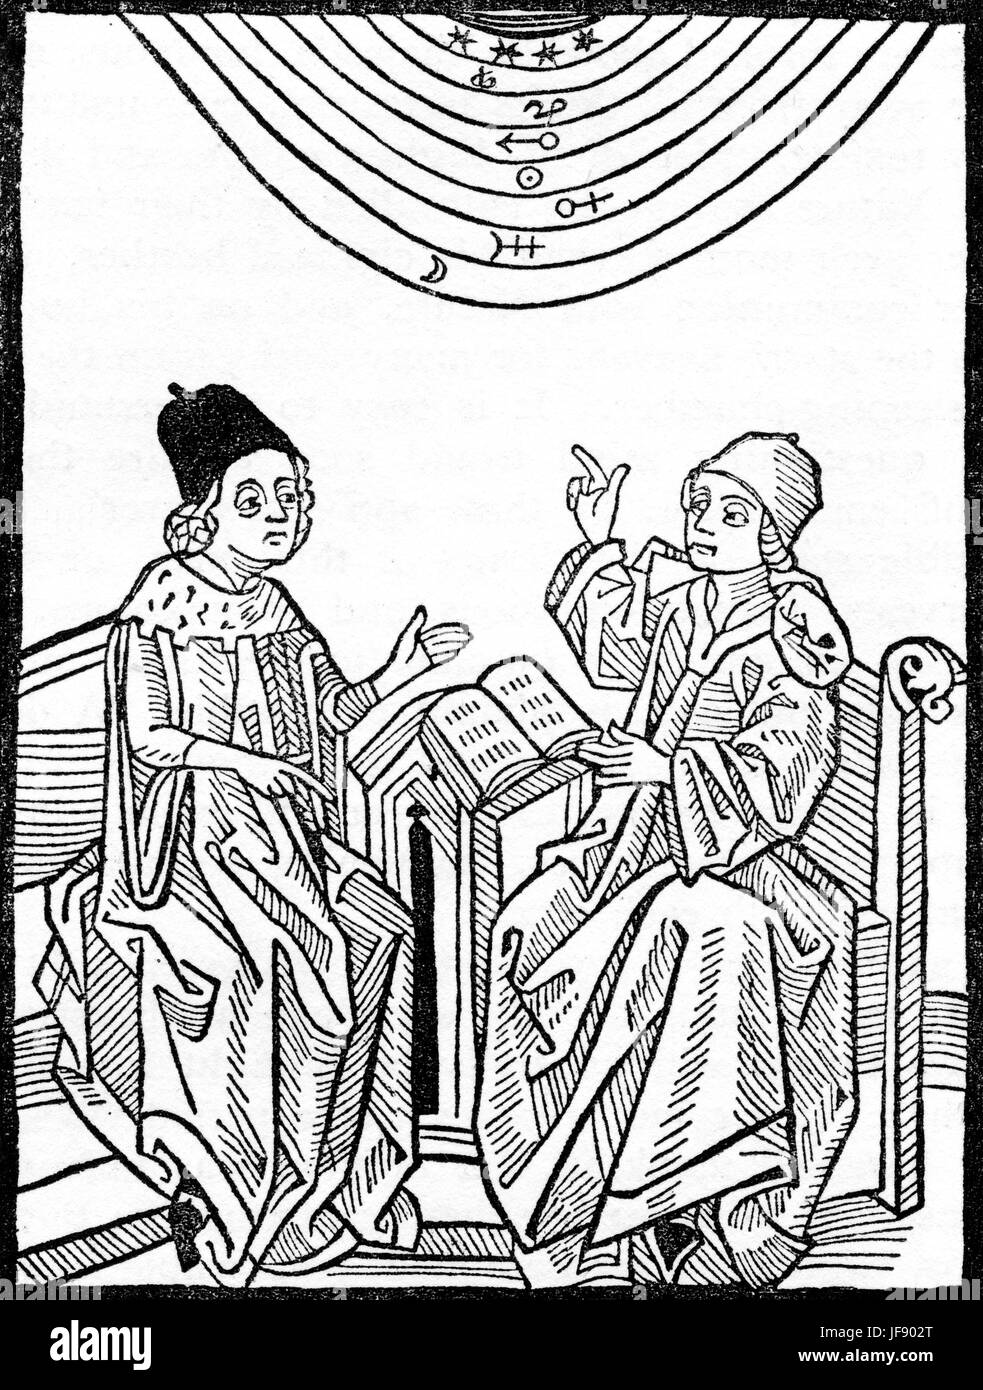 Die Schule der Astrologie. Zwei mittelalterliche Gelehrte diskutieren Signes des Tierkreises und den Sternen. Stockfoto